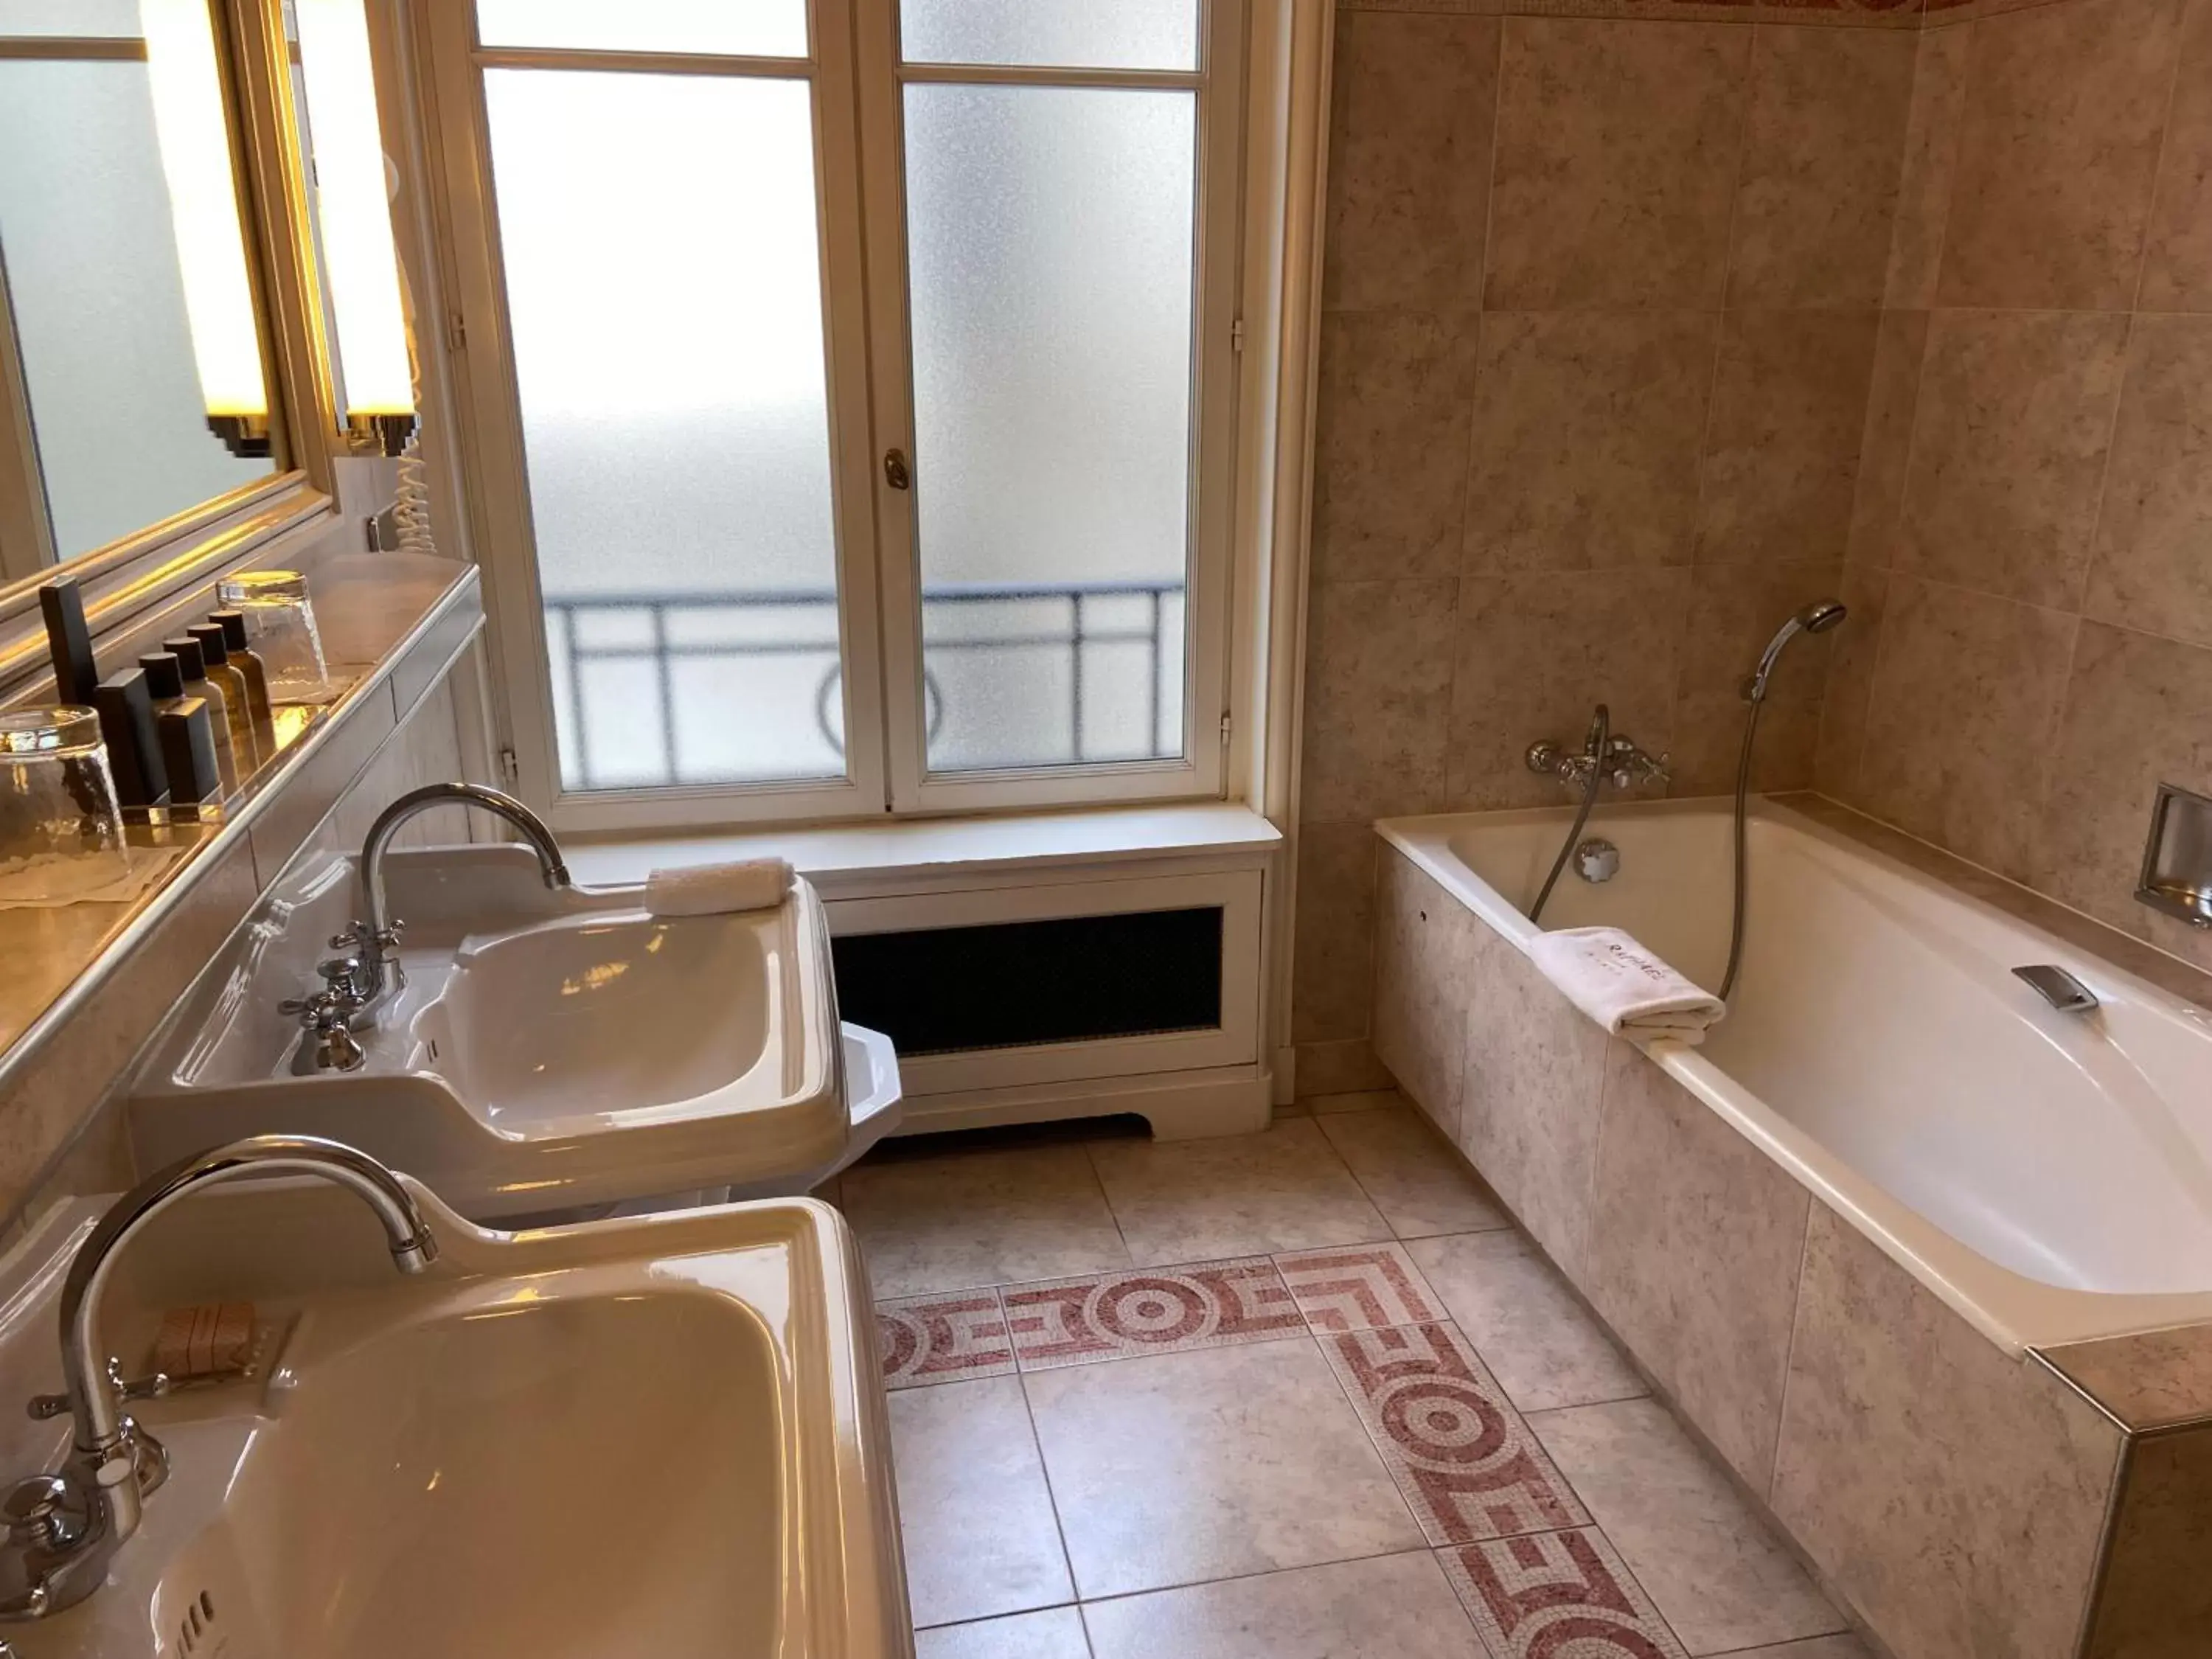 Bathroom in Hôtel Raphael